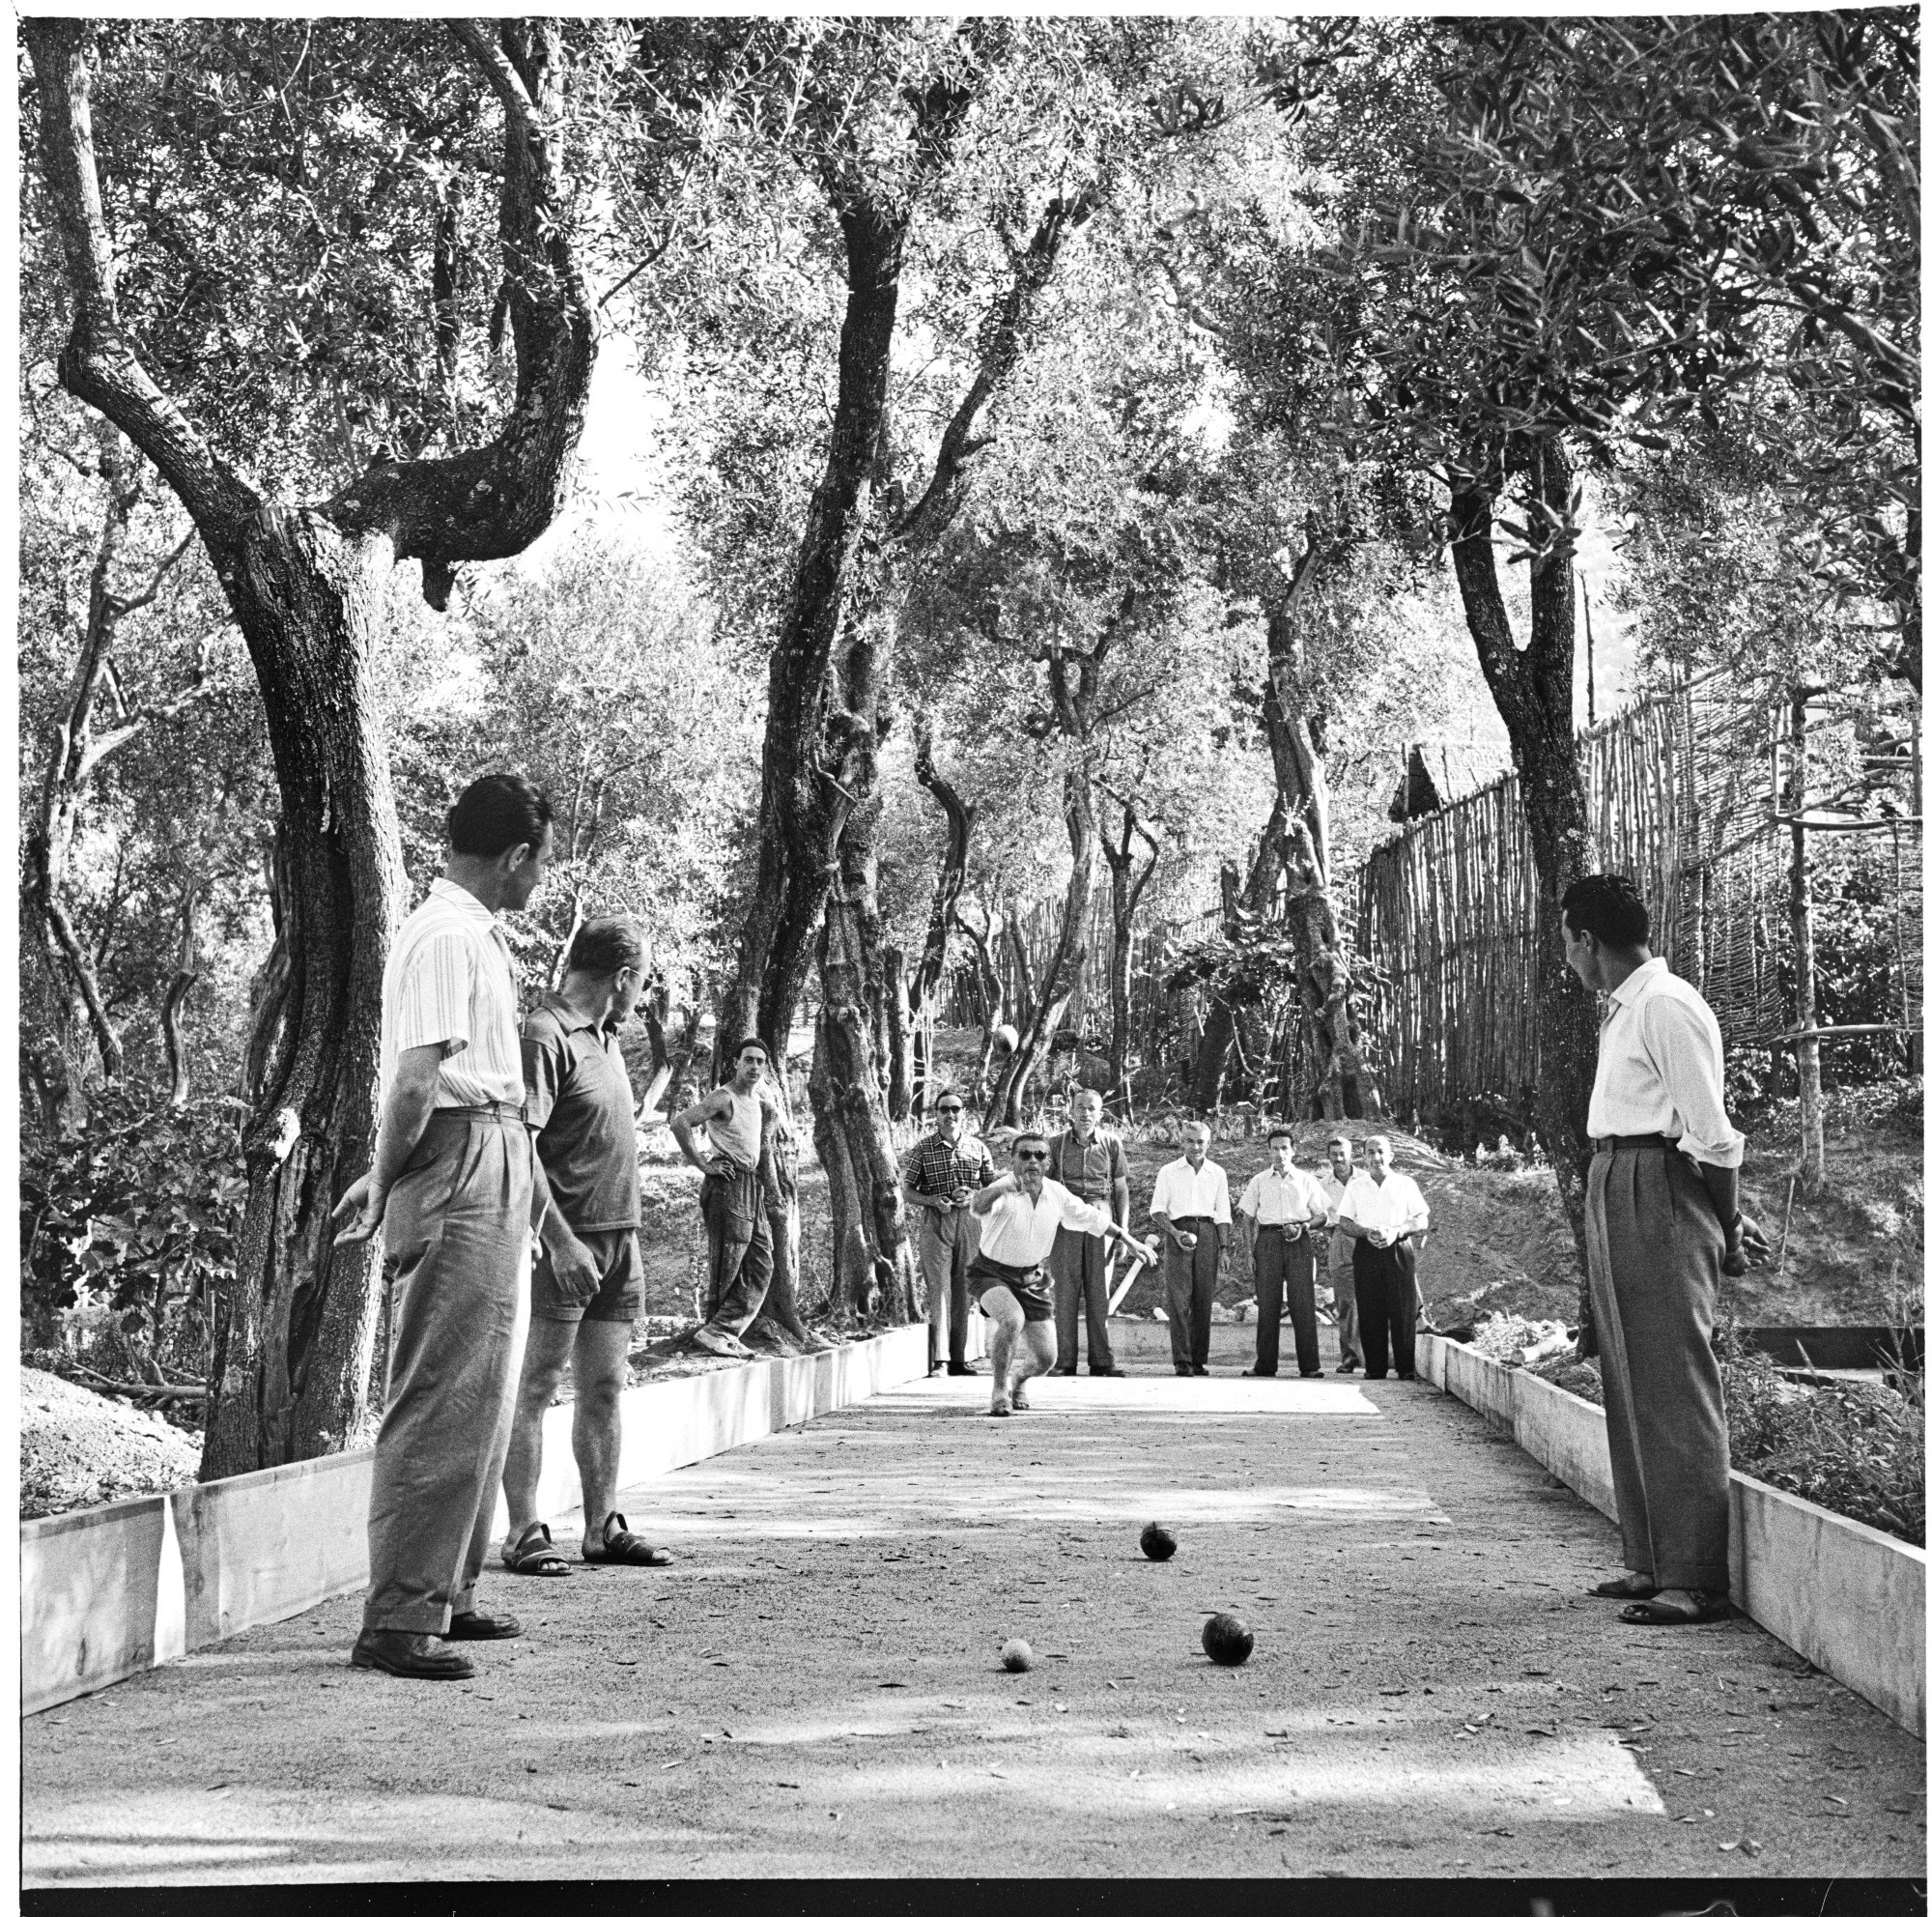 Dipendenti Montecatini giocano a bocce nella casa di soggiorno a Seiano (Napoli), 15-16 luglio 1954  Fotografia di Tino Petrelli – Publifoto   